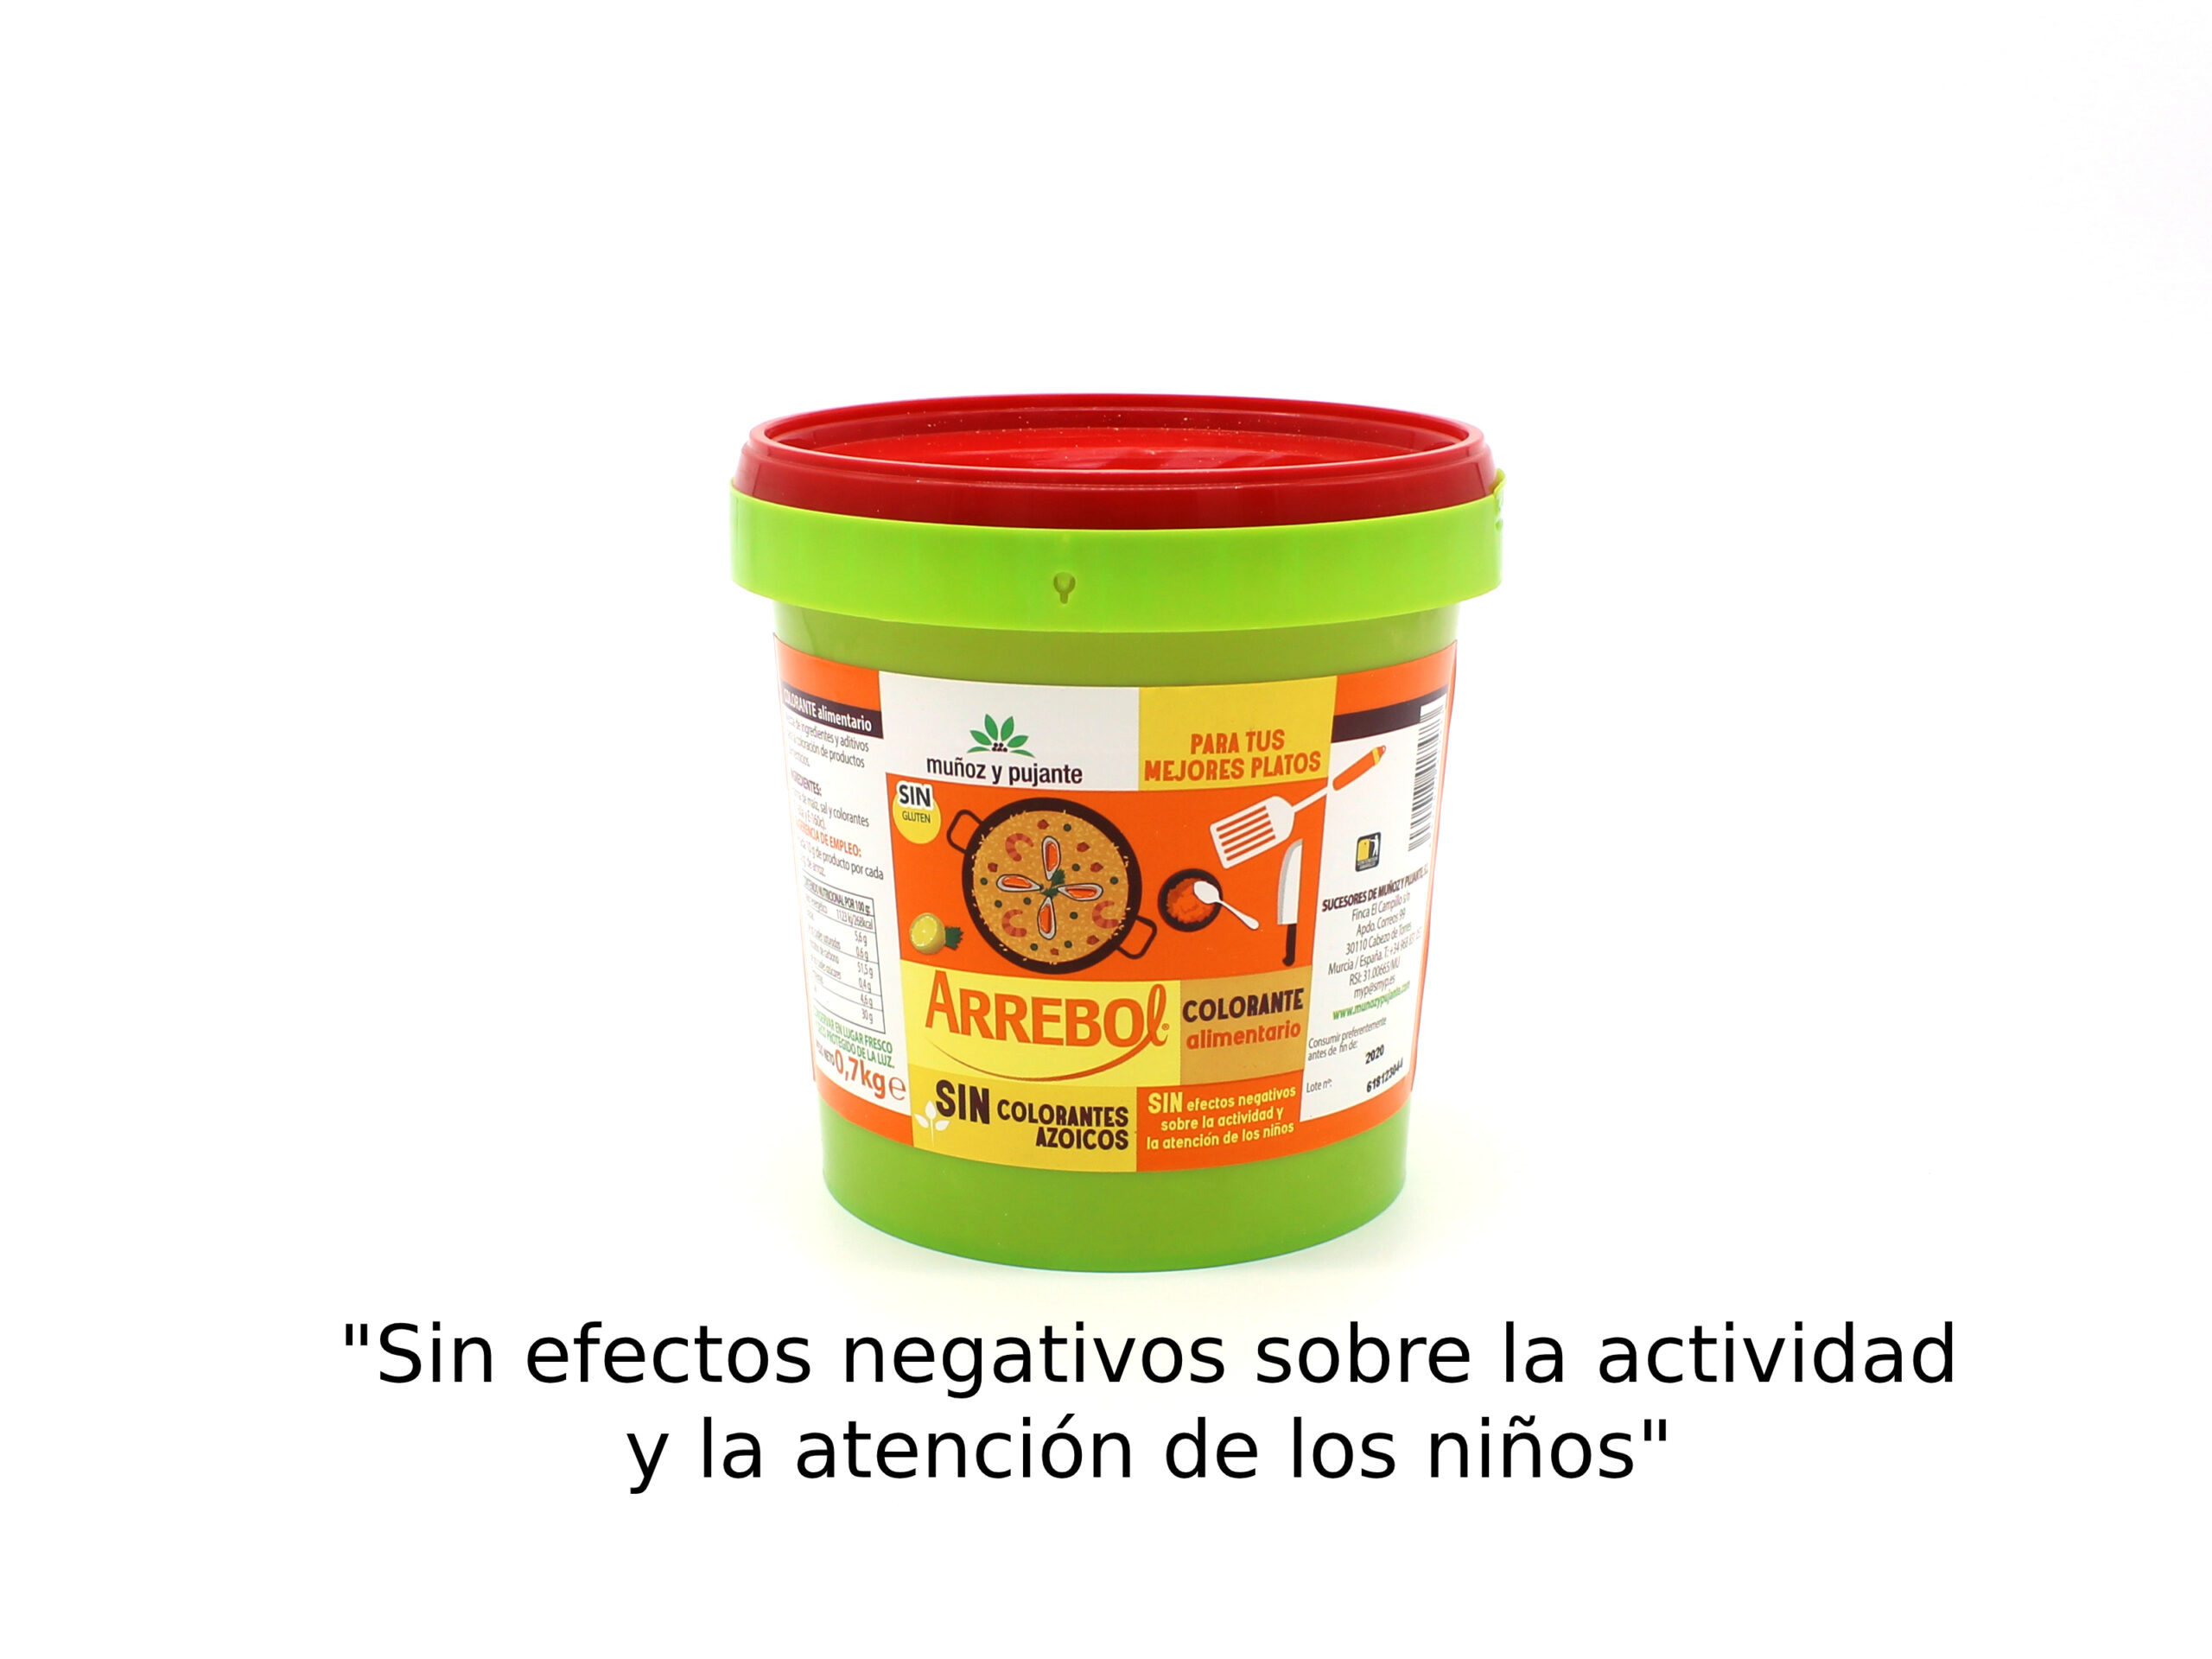 Comprar Arrebol Colorante Alimentario online - Productos Laure ®